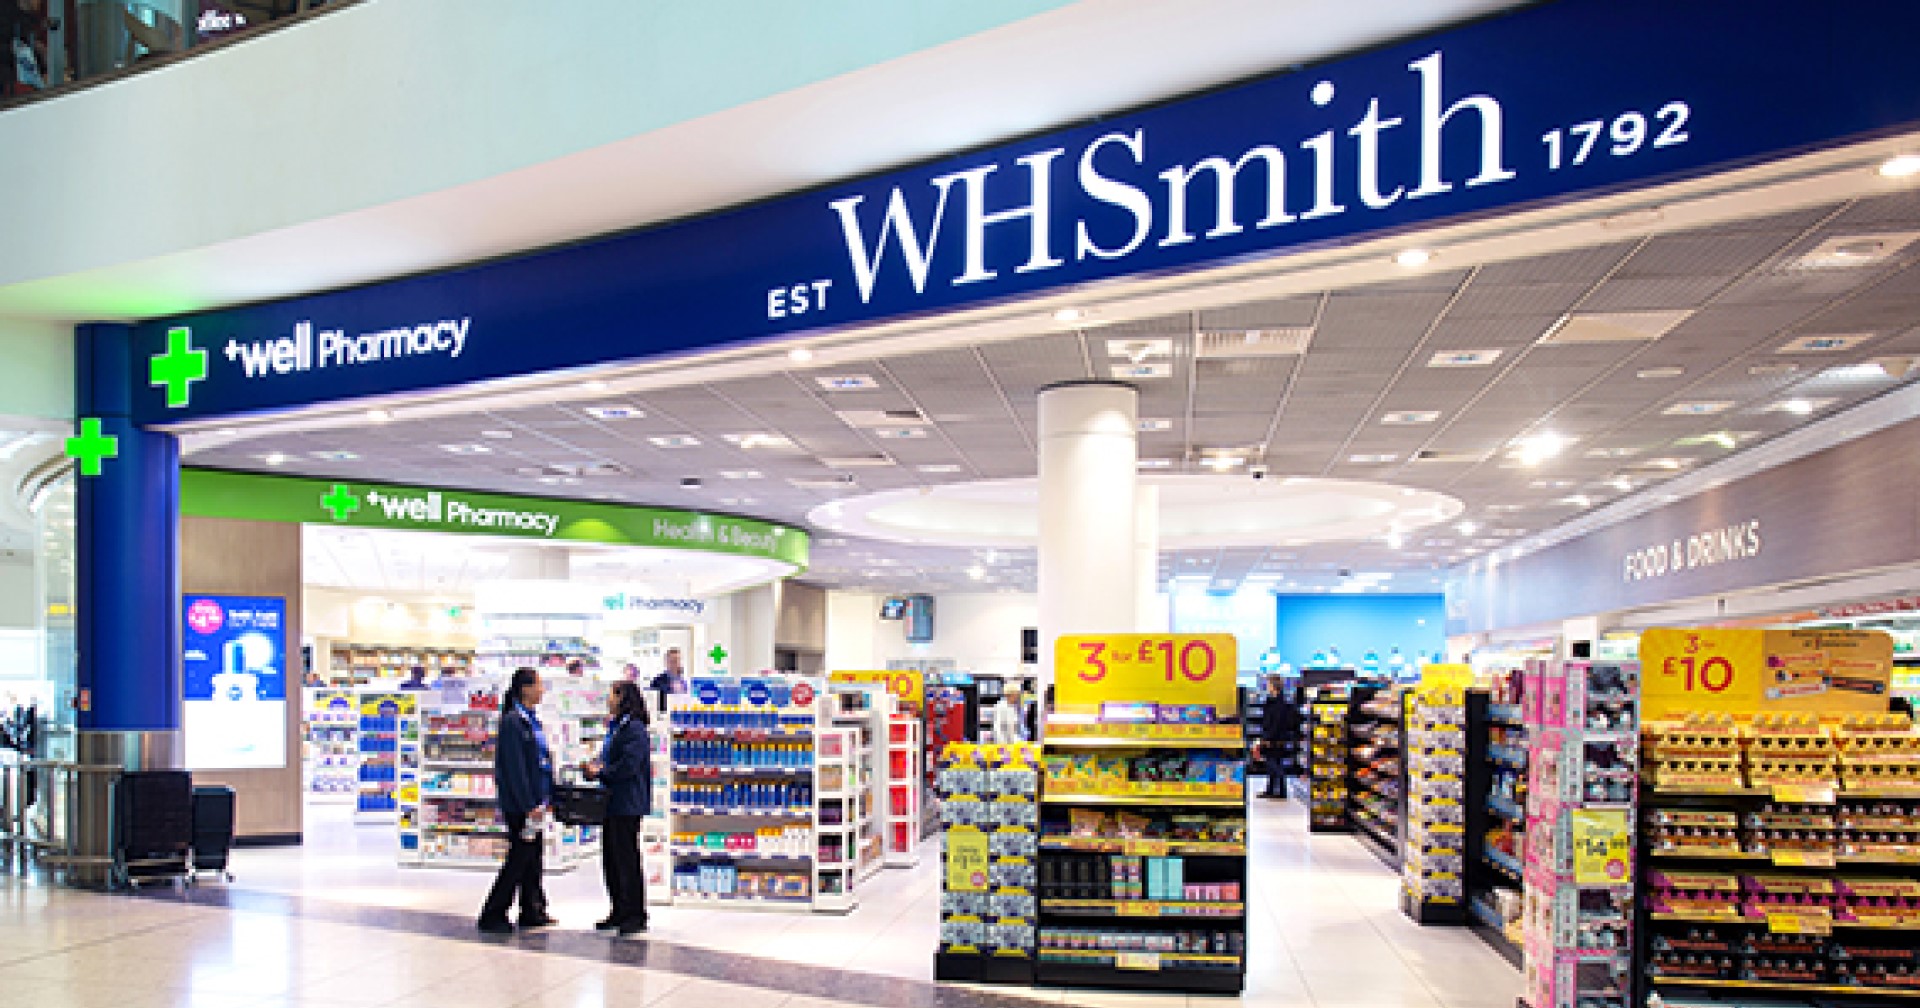 WH Smith ร้านค้าปลีกจากสหราชอาณาจักรถูกแฮกเกอร์นิรนามขโมยข้อมูล